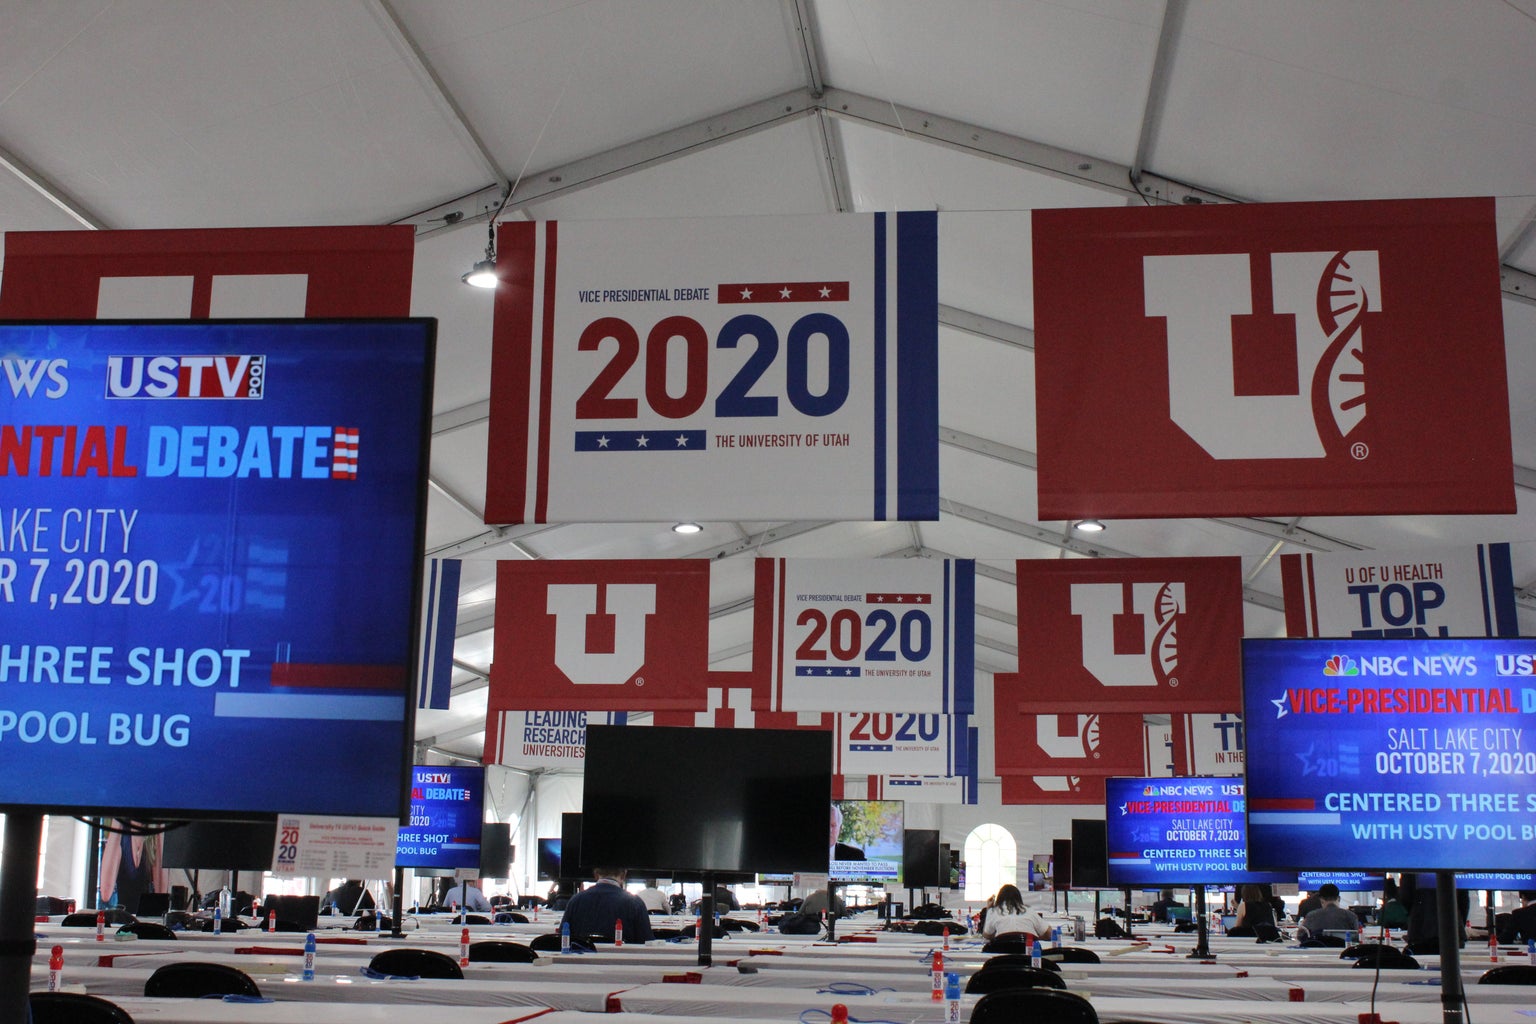 media tent interior at vice presidential debate 2020